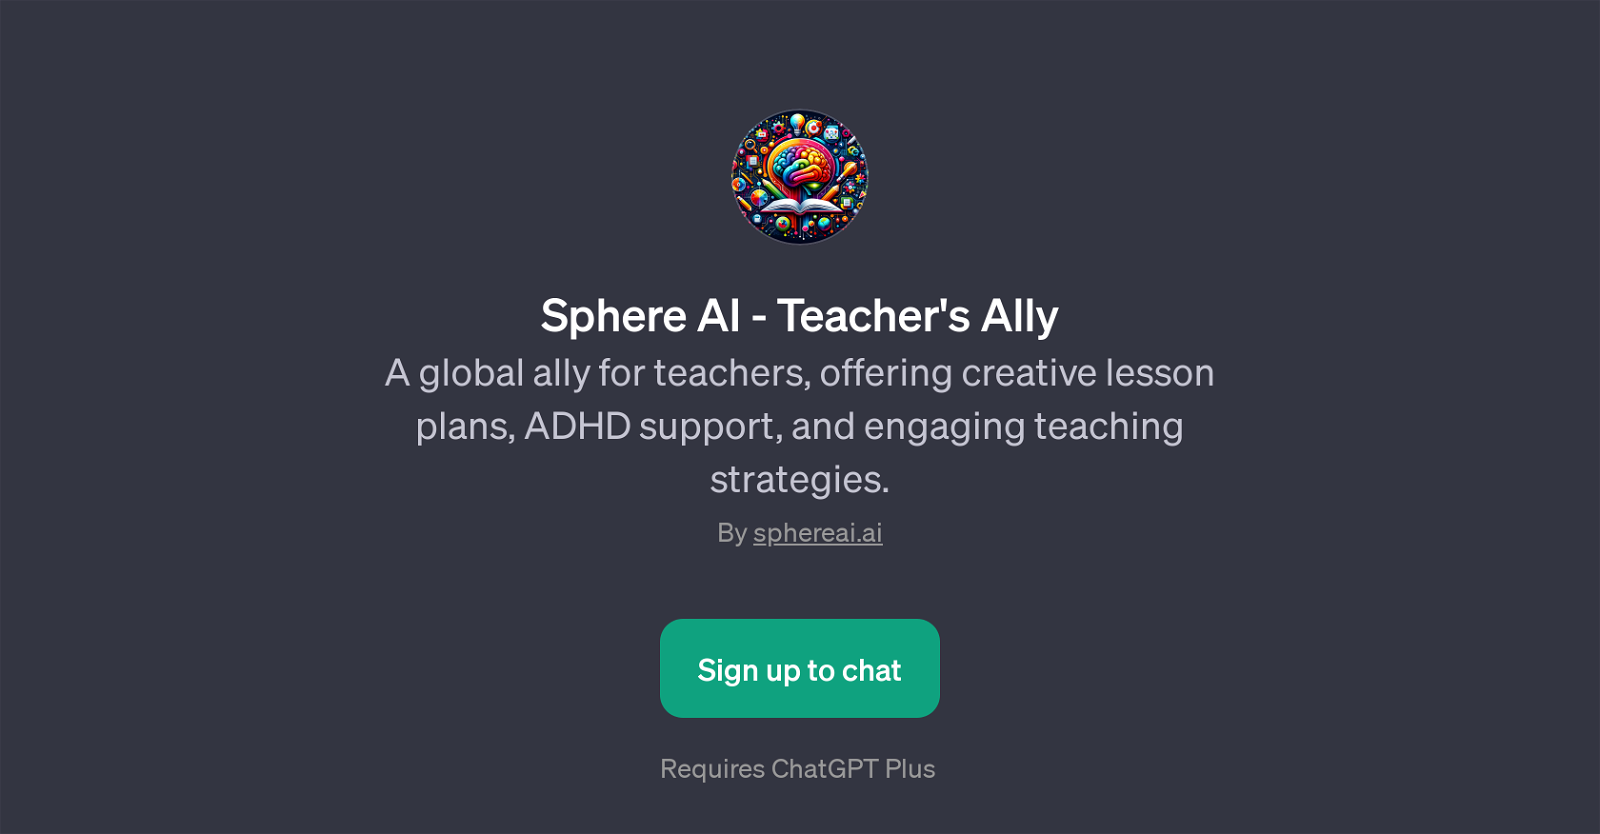 Sphere AI - Teacher's Ally website